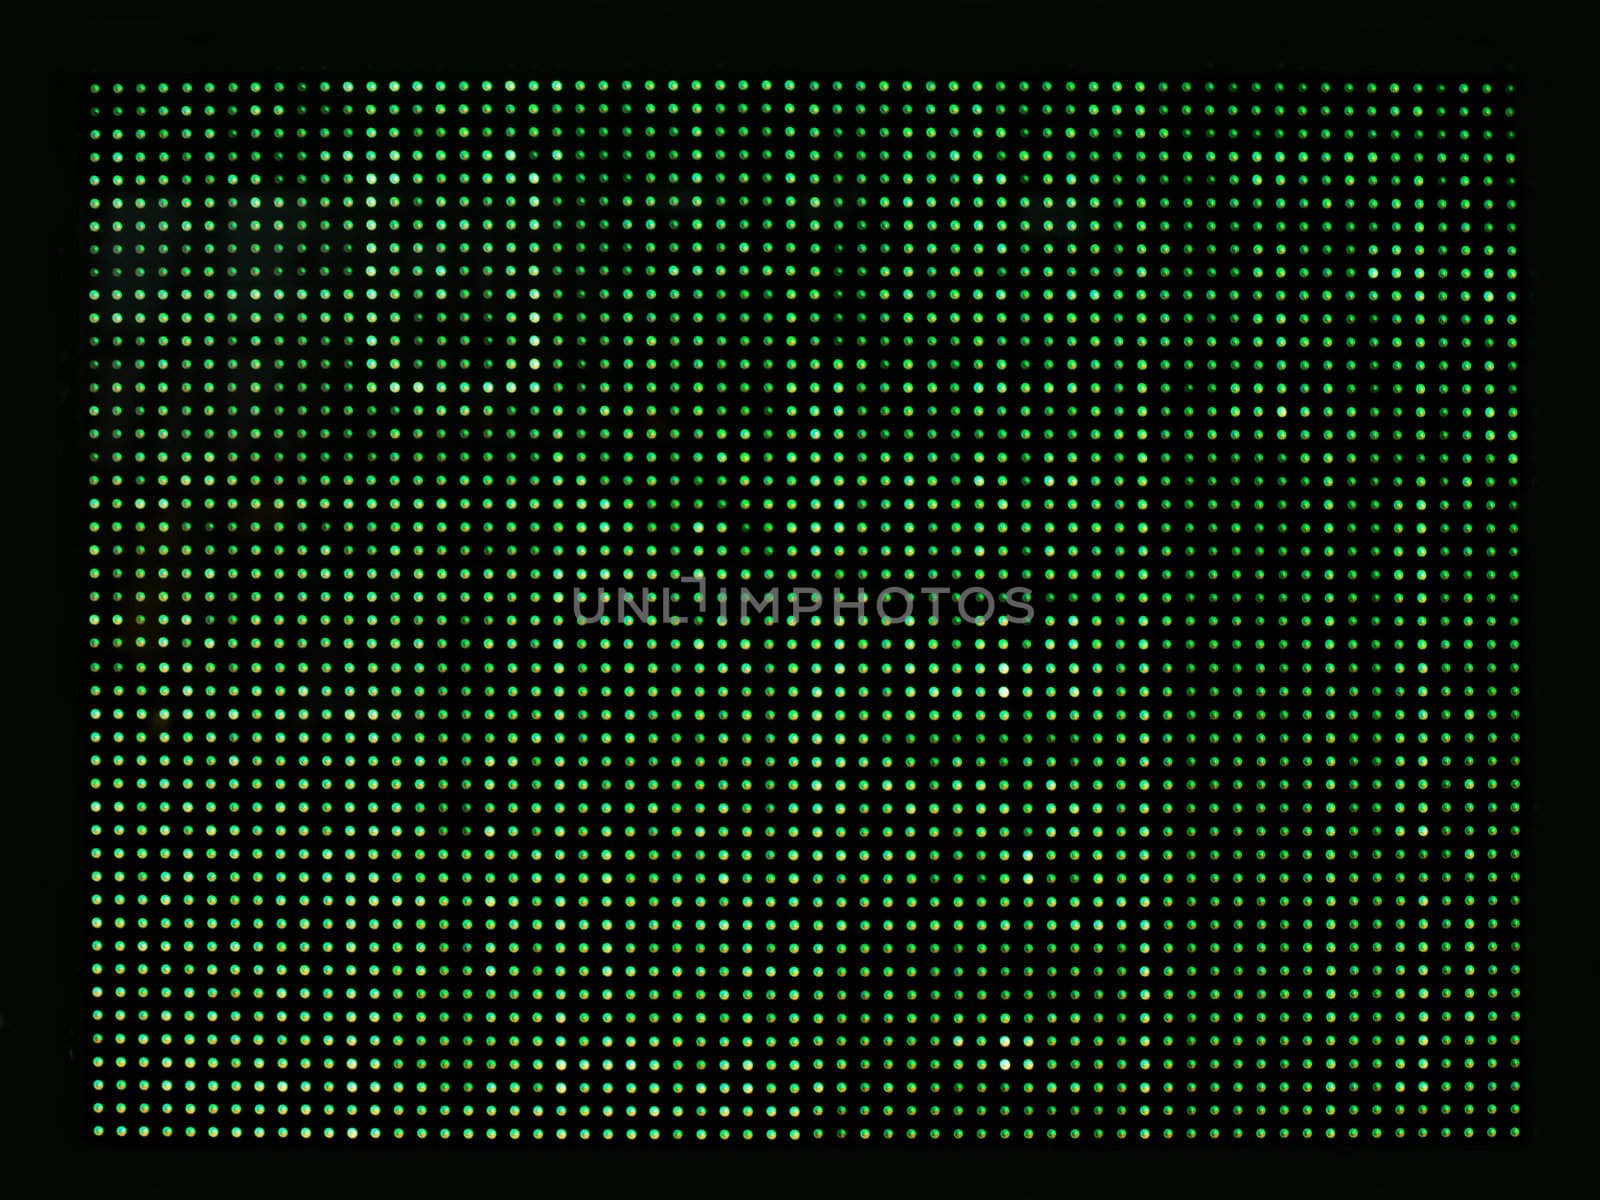 green computer blinking lights by zkruger